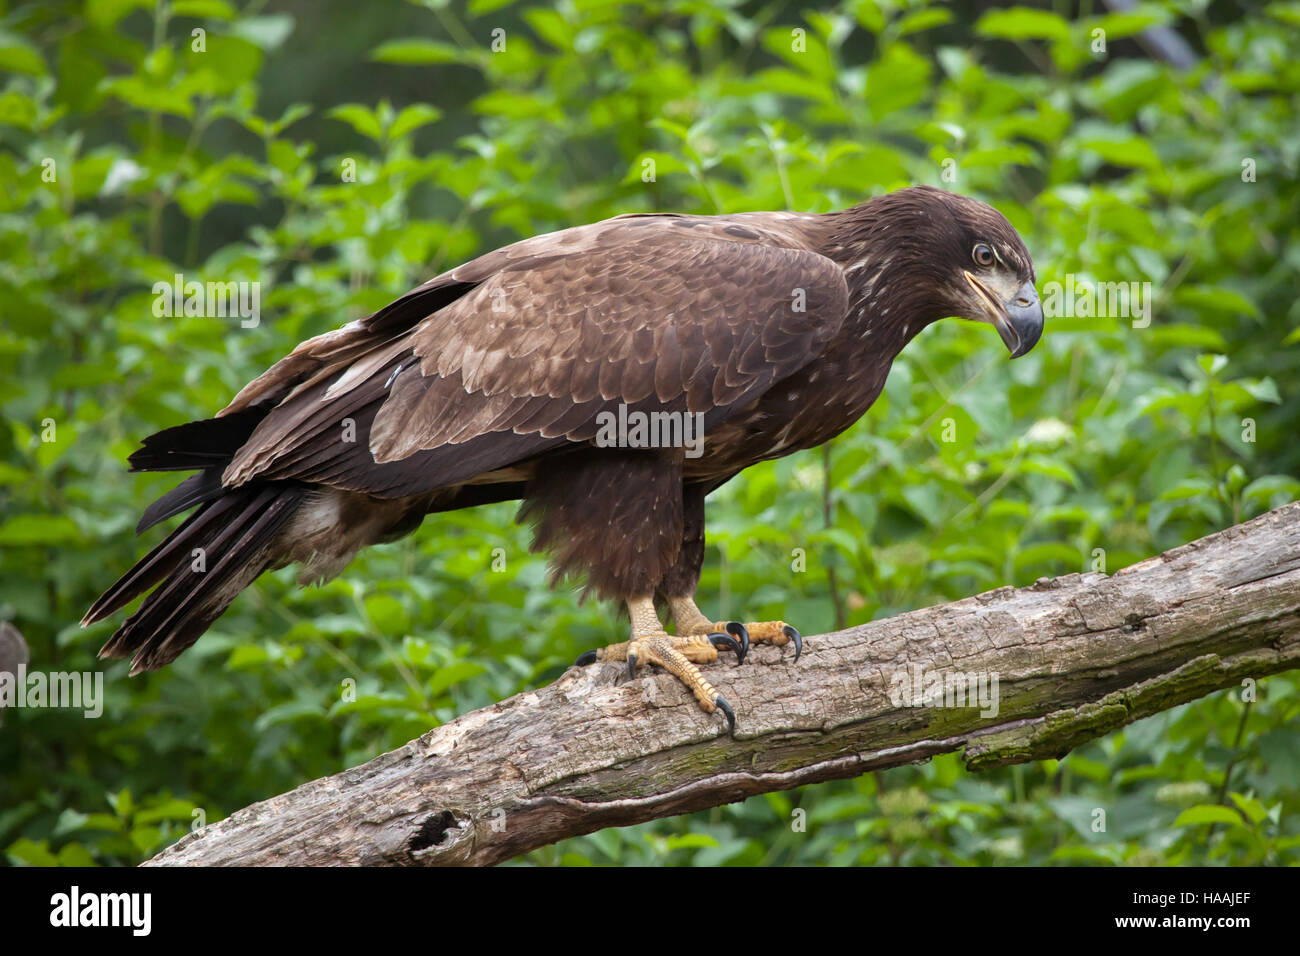 Female bald eagle (Haliaeetus leucocephalus). Wildlife animal. Stock Photo